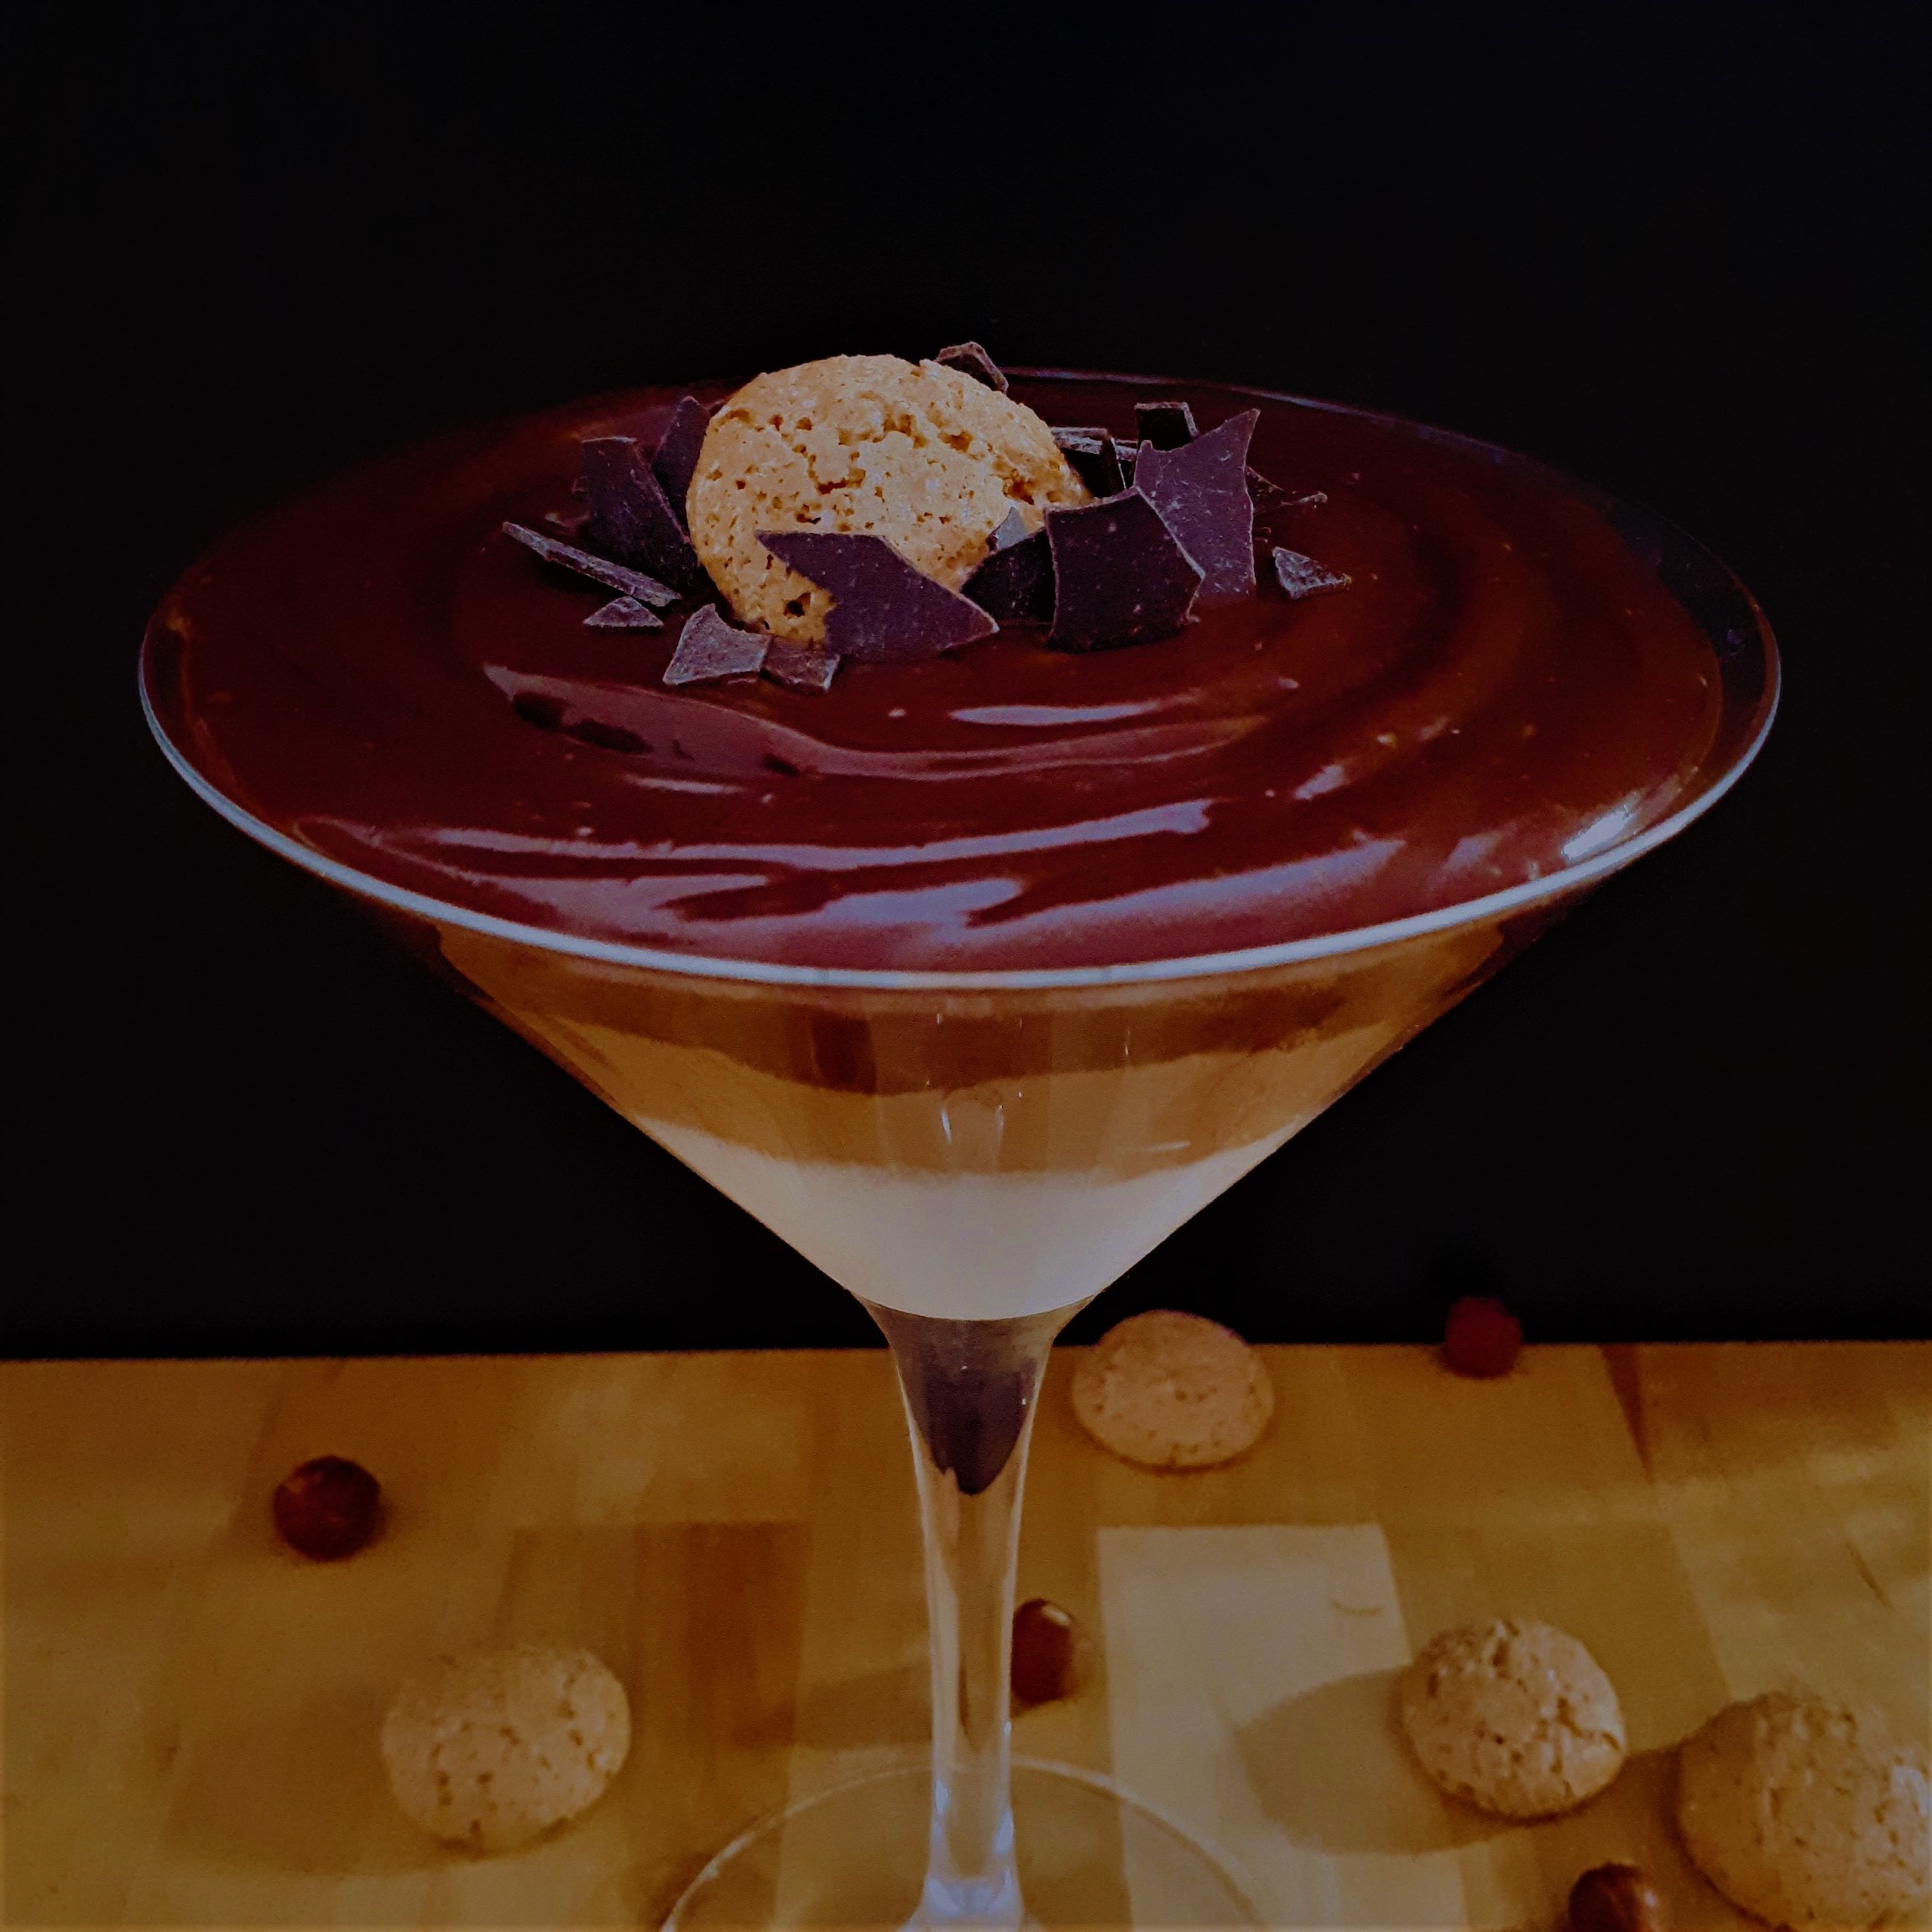 Martini pohár naplnený domácim Monte krémom z troch rôznofarebných vrstiev dozdobený sušienkou Amaretti a kúskami horkej čokolády na drevenom stole okolo rozsypané Amaretti sušienky a lieskové orechy.